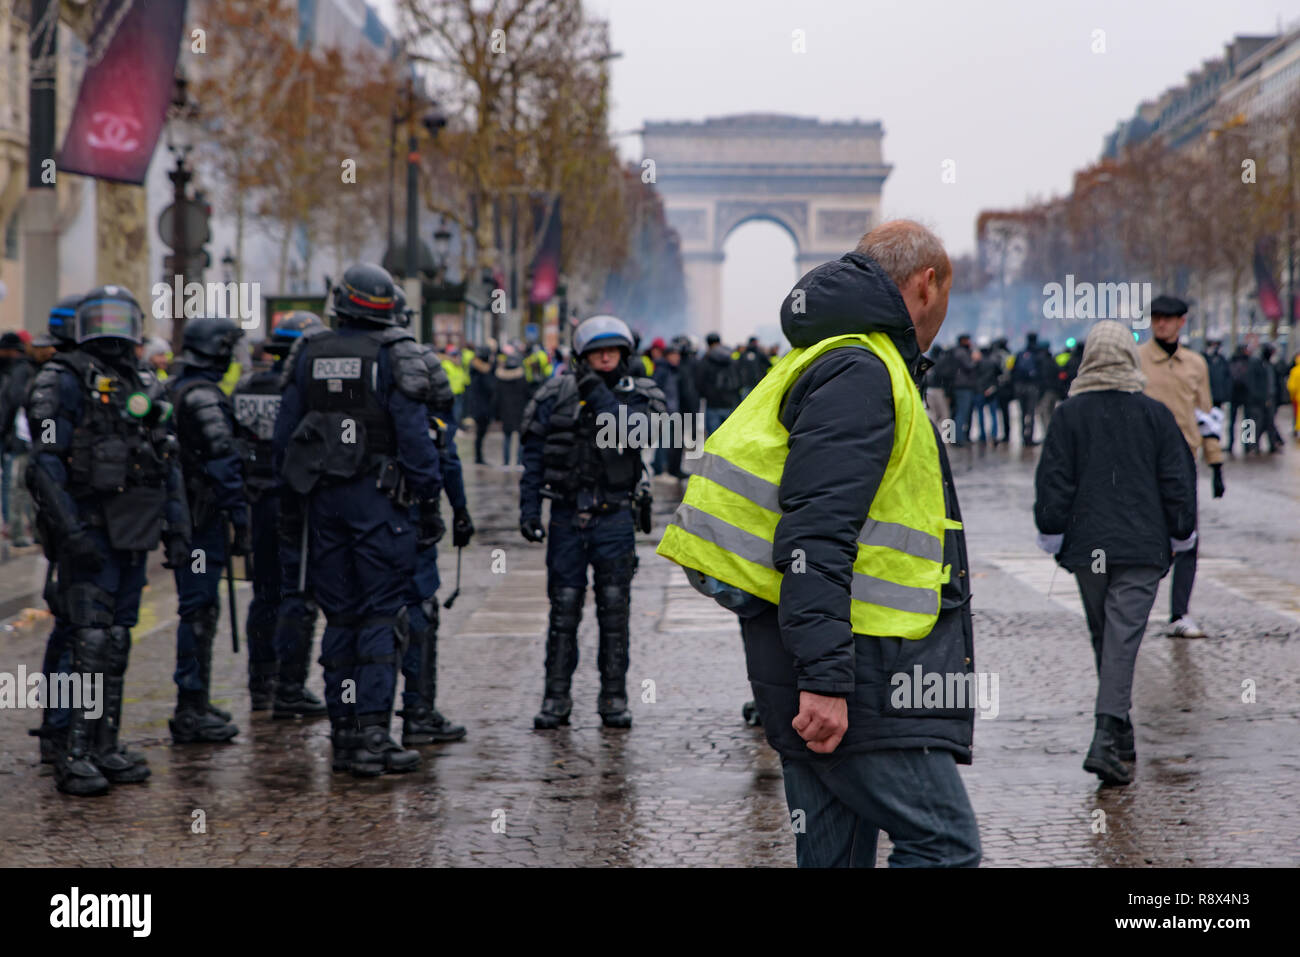 La polizia antisommossa e giubbotti di giallo di dimostrazione (Gilets Jaunes) manifestanti contro il governo e il presidente francese Macron a Champs-Élysées, Parigi, Francia Foto Stock